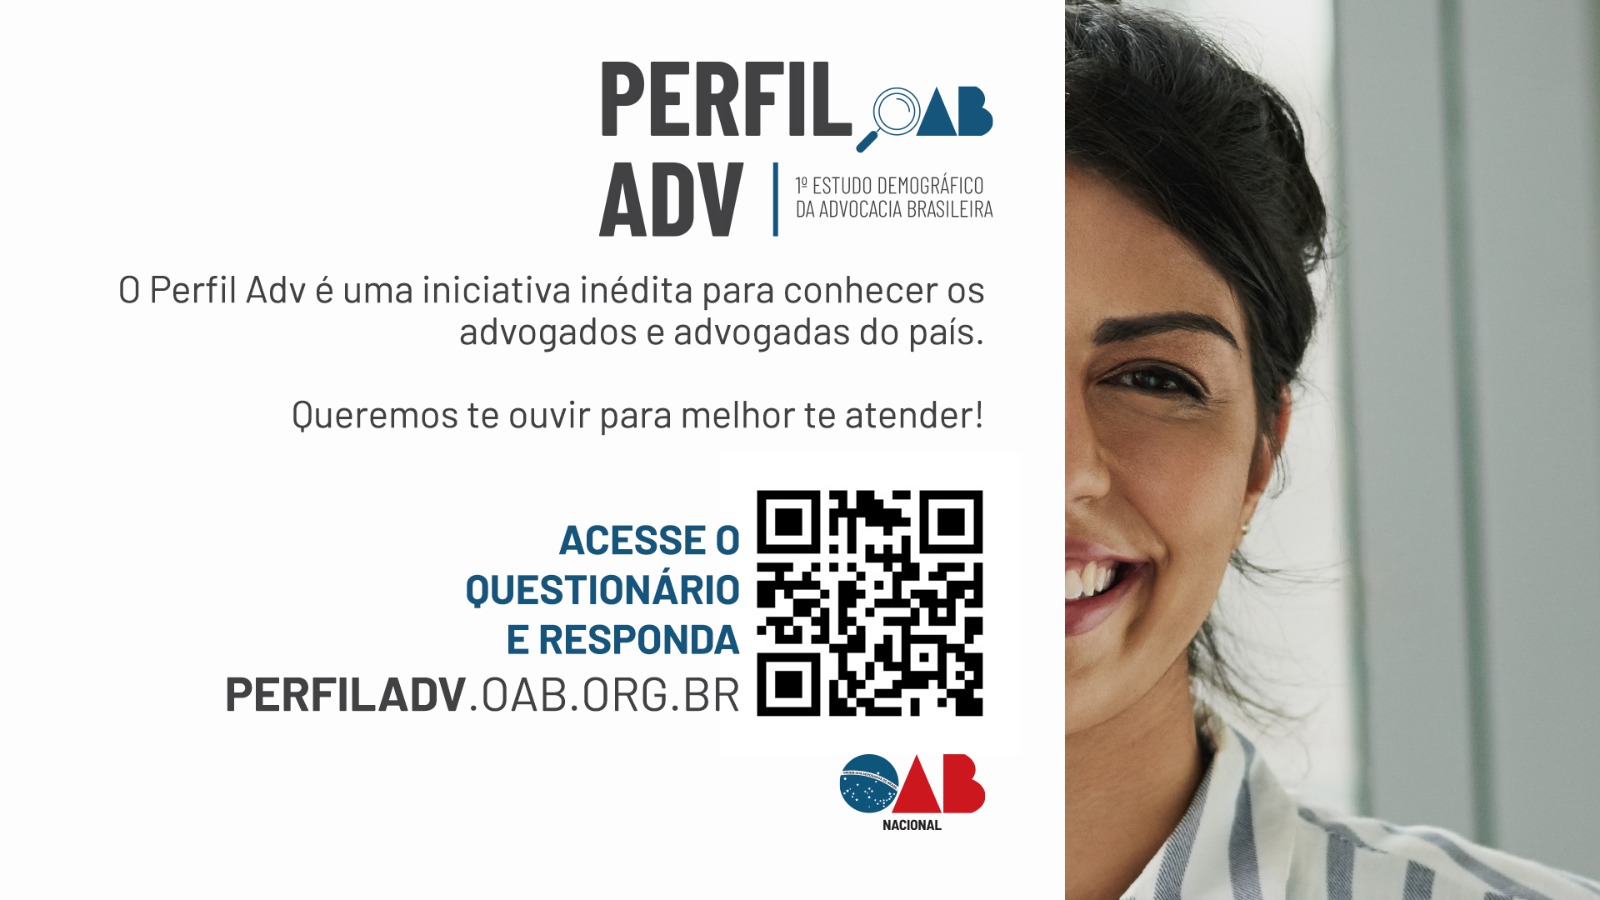 Perfil ADV – Primeiro Estudo Demográfico da Advocacia Brasileira